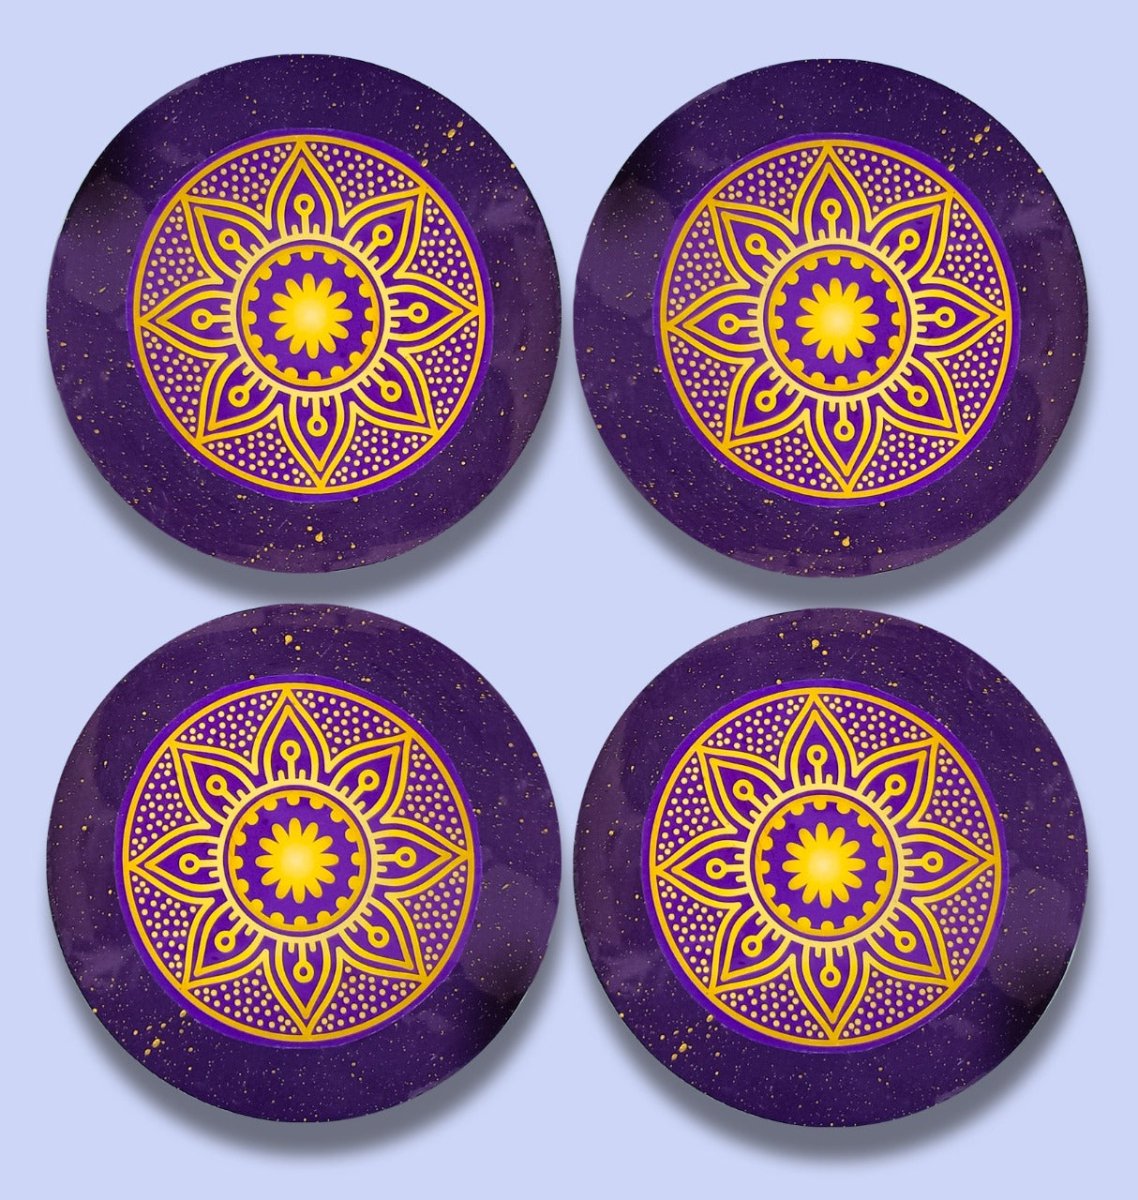 Resin Art Coasters (Set of 4) - Kreate- Coasters